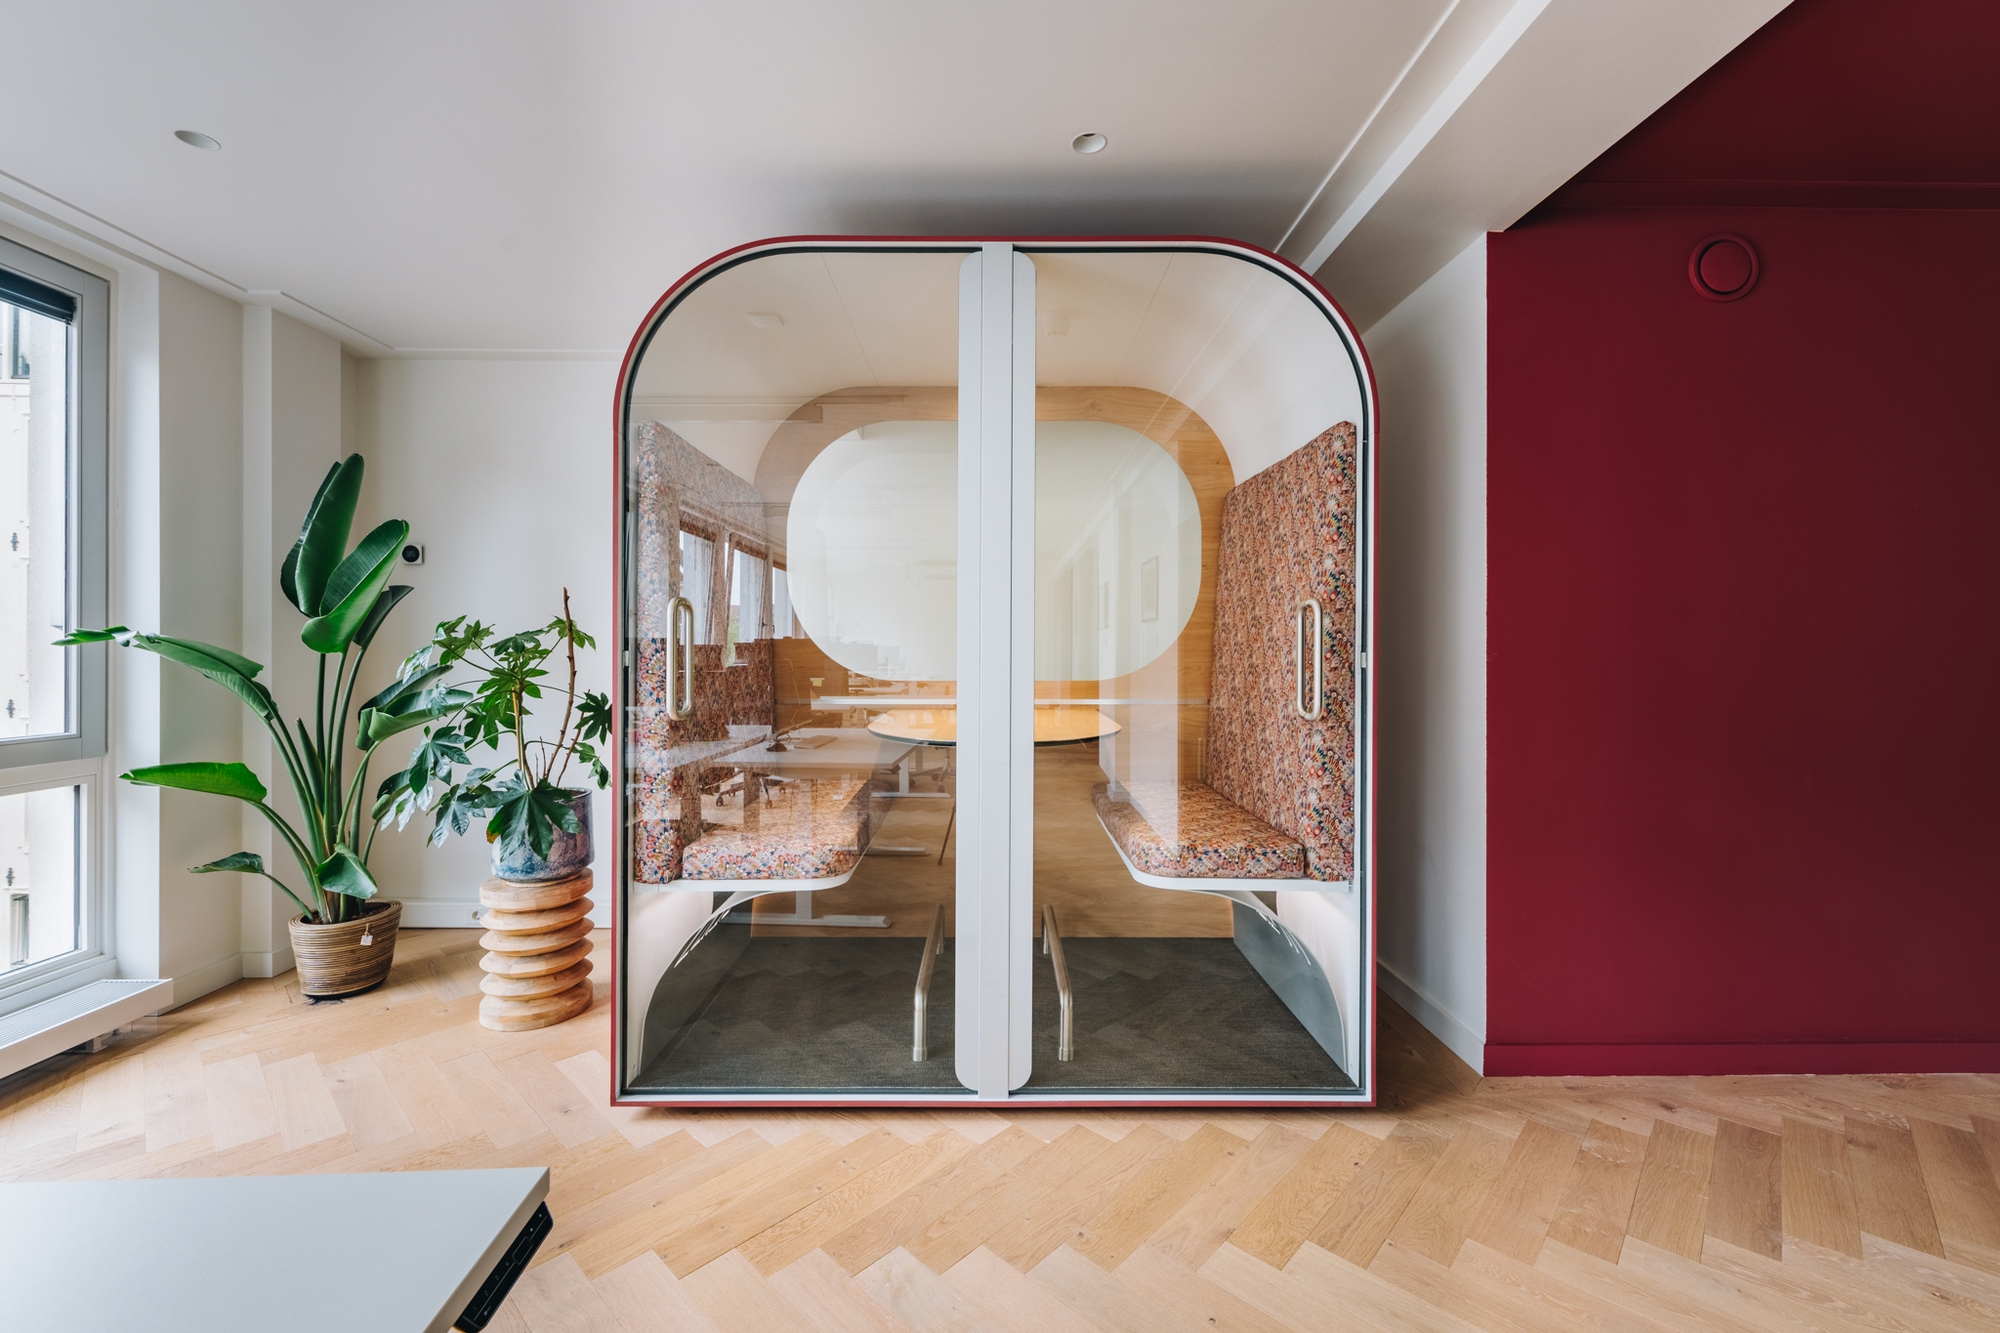 图片[5]|MR MARVIS办公室——阿姆斯特丹|ART-Arrakis | 建筑室内设计的创新与灵感